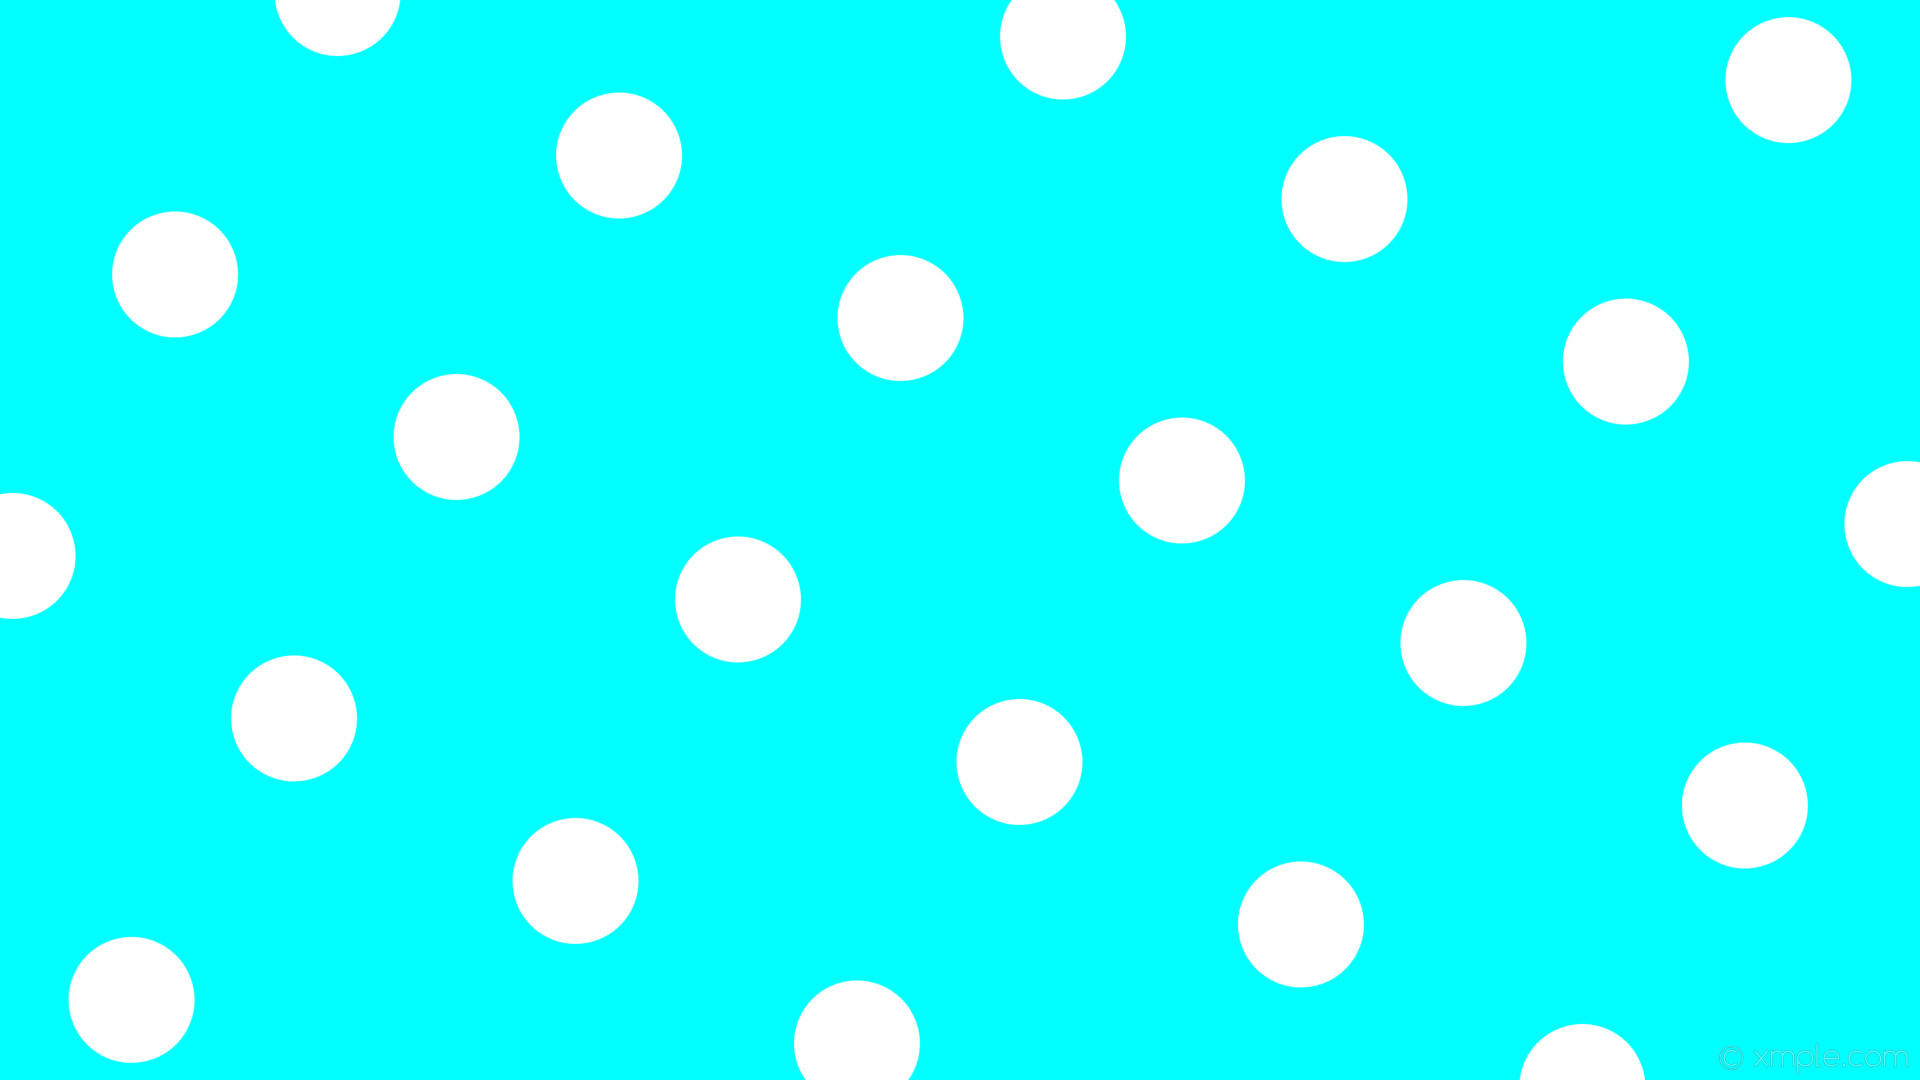 1920x1080 wallpaper spots blue white polka dots aqua cyan #00ffff #ffffff 150Â° 126px  325px